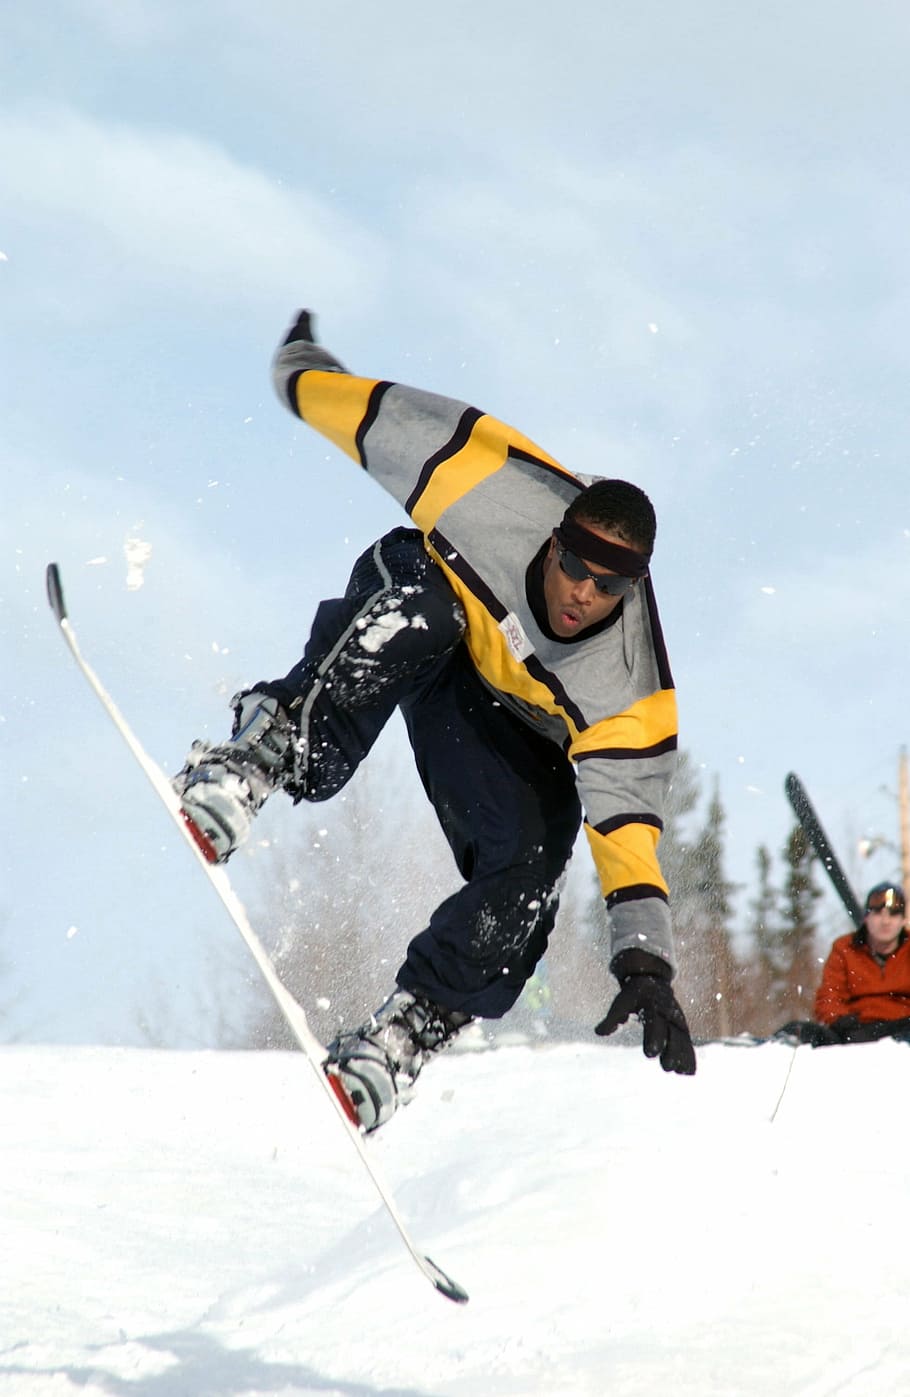 hombre snowboard, durante el día, snowboard, snowboarder, deporte, diversión, montaña, invierno, nieve, alpino